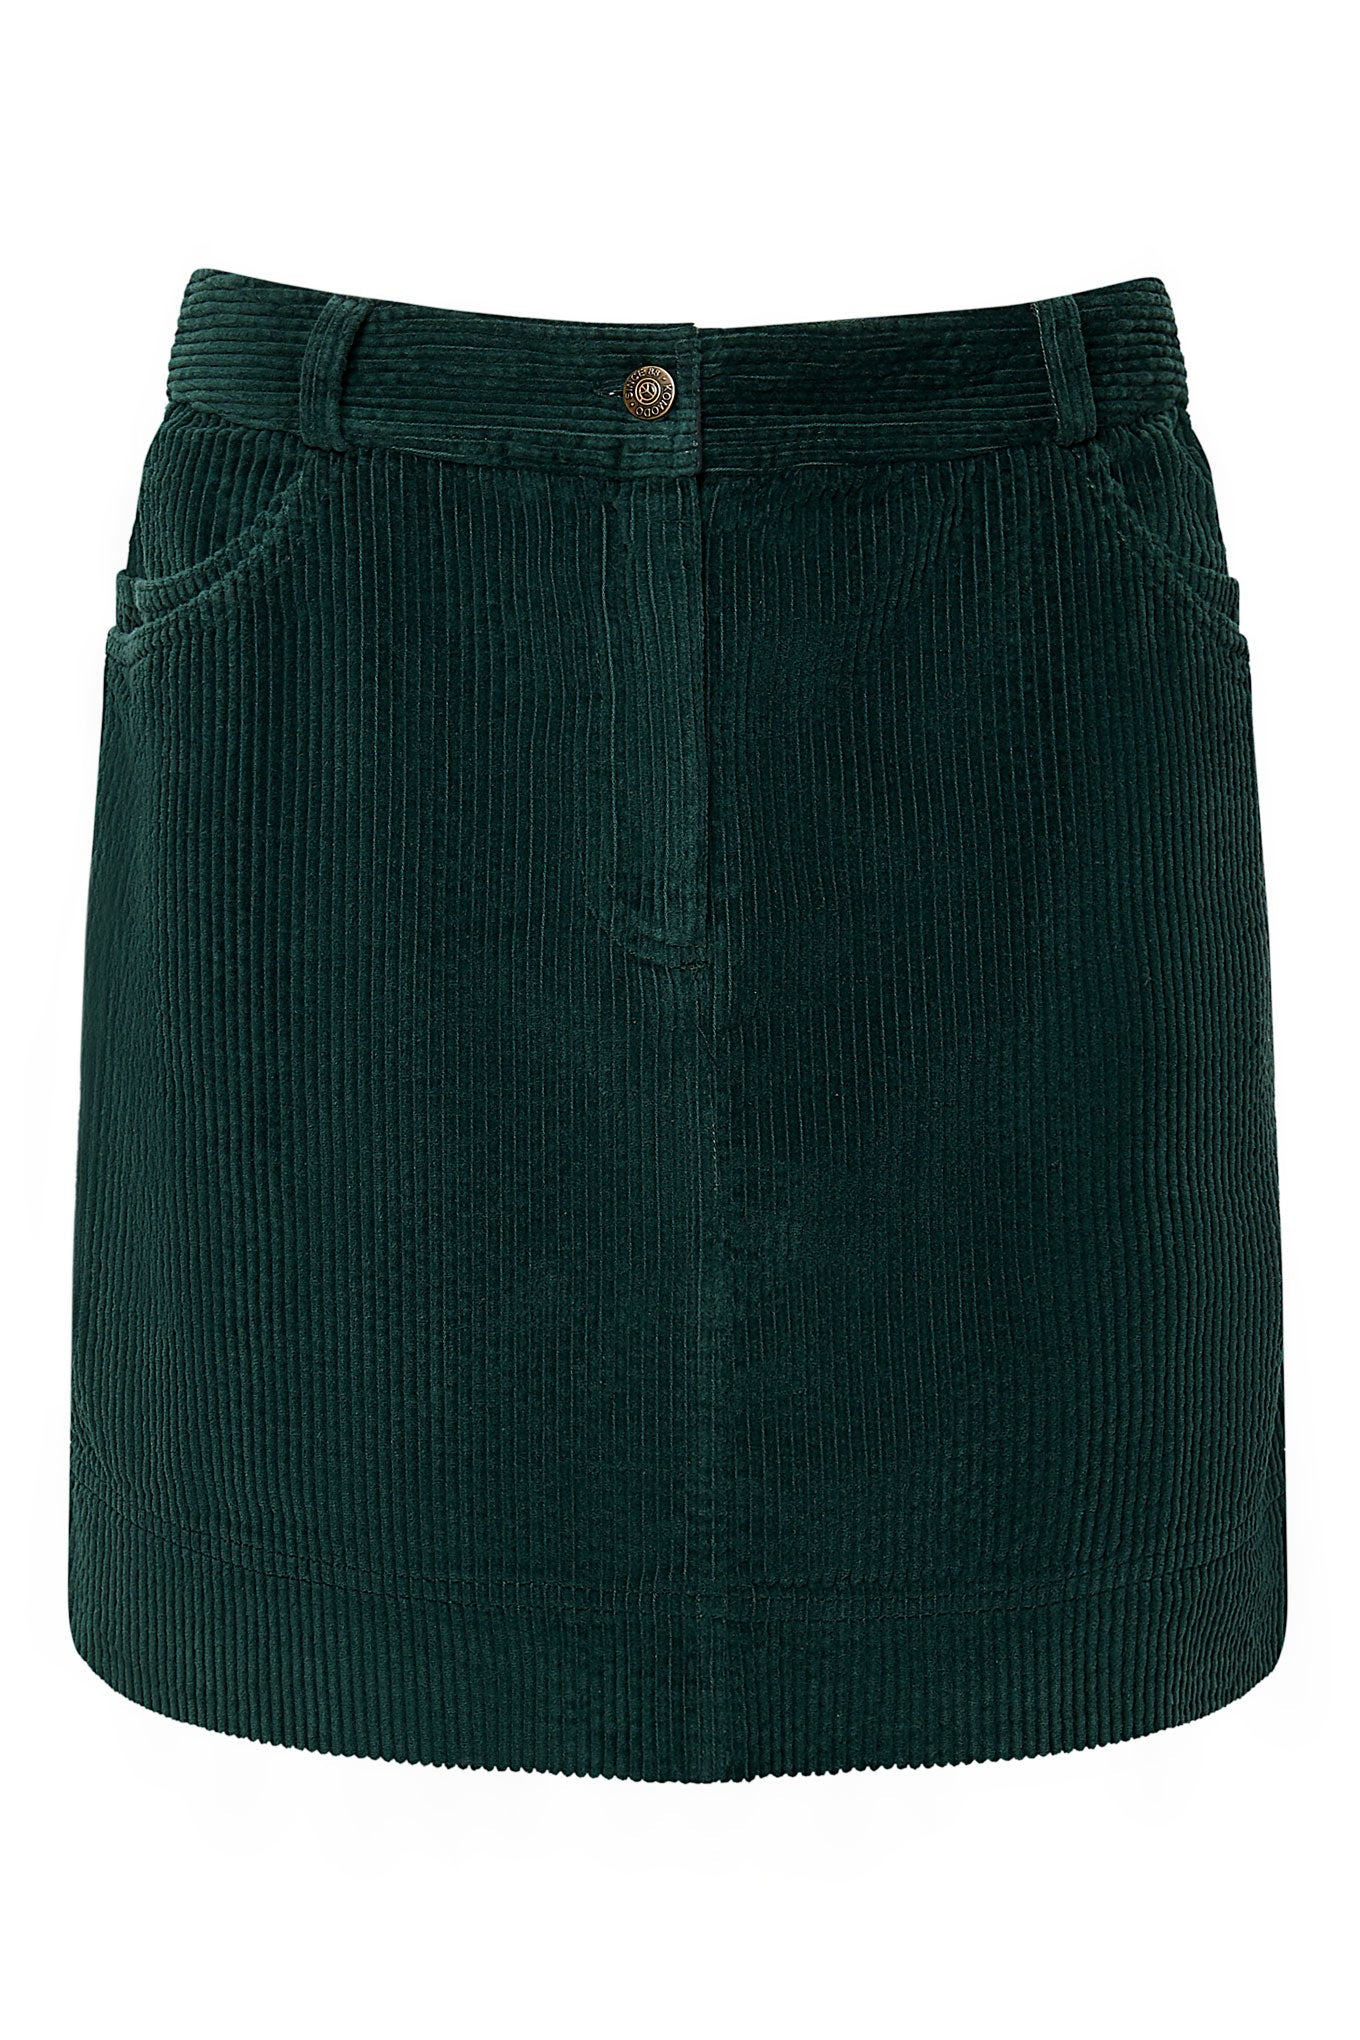 Mini jupe LEONI en velours côtelé vert foncé en coton 100% biologique de Komodo